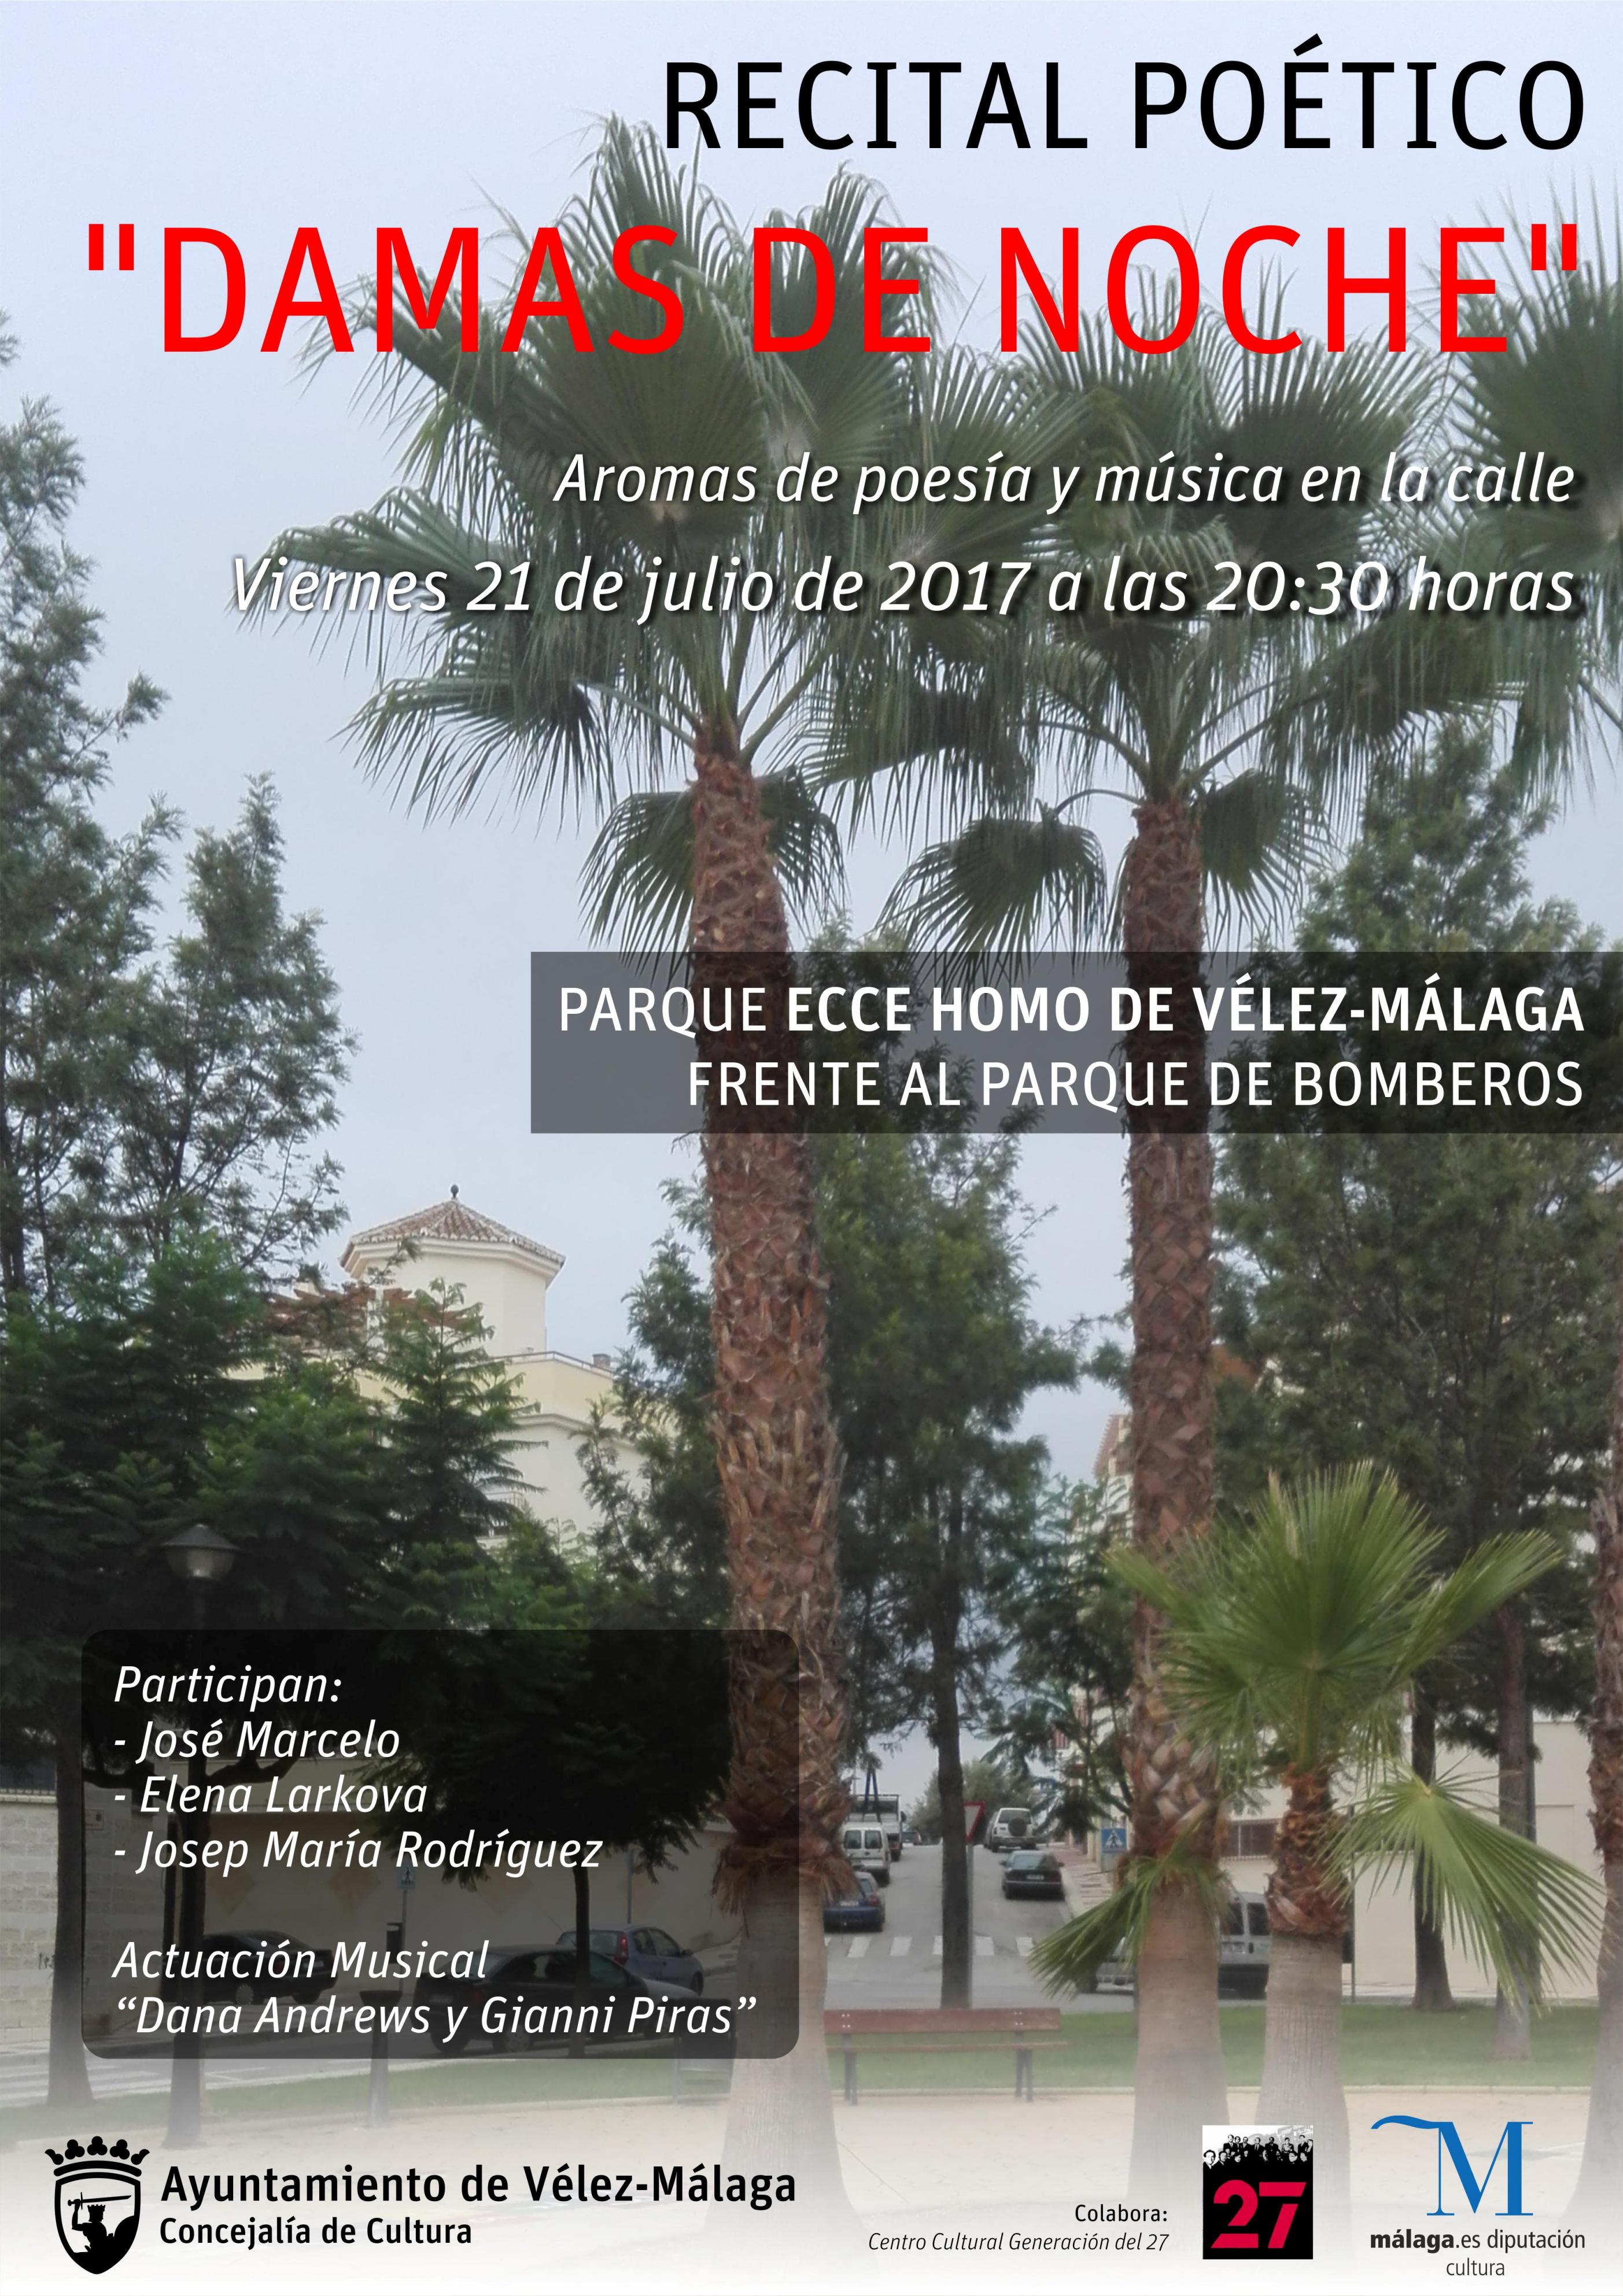 El ciclo Damas de Noche del 27 vuelve a Vélez-Málaga con Josep María  Rodríguez como autor invitado - AxarquiaPlus